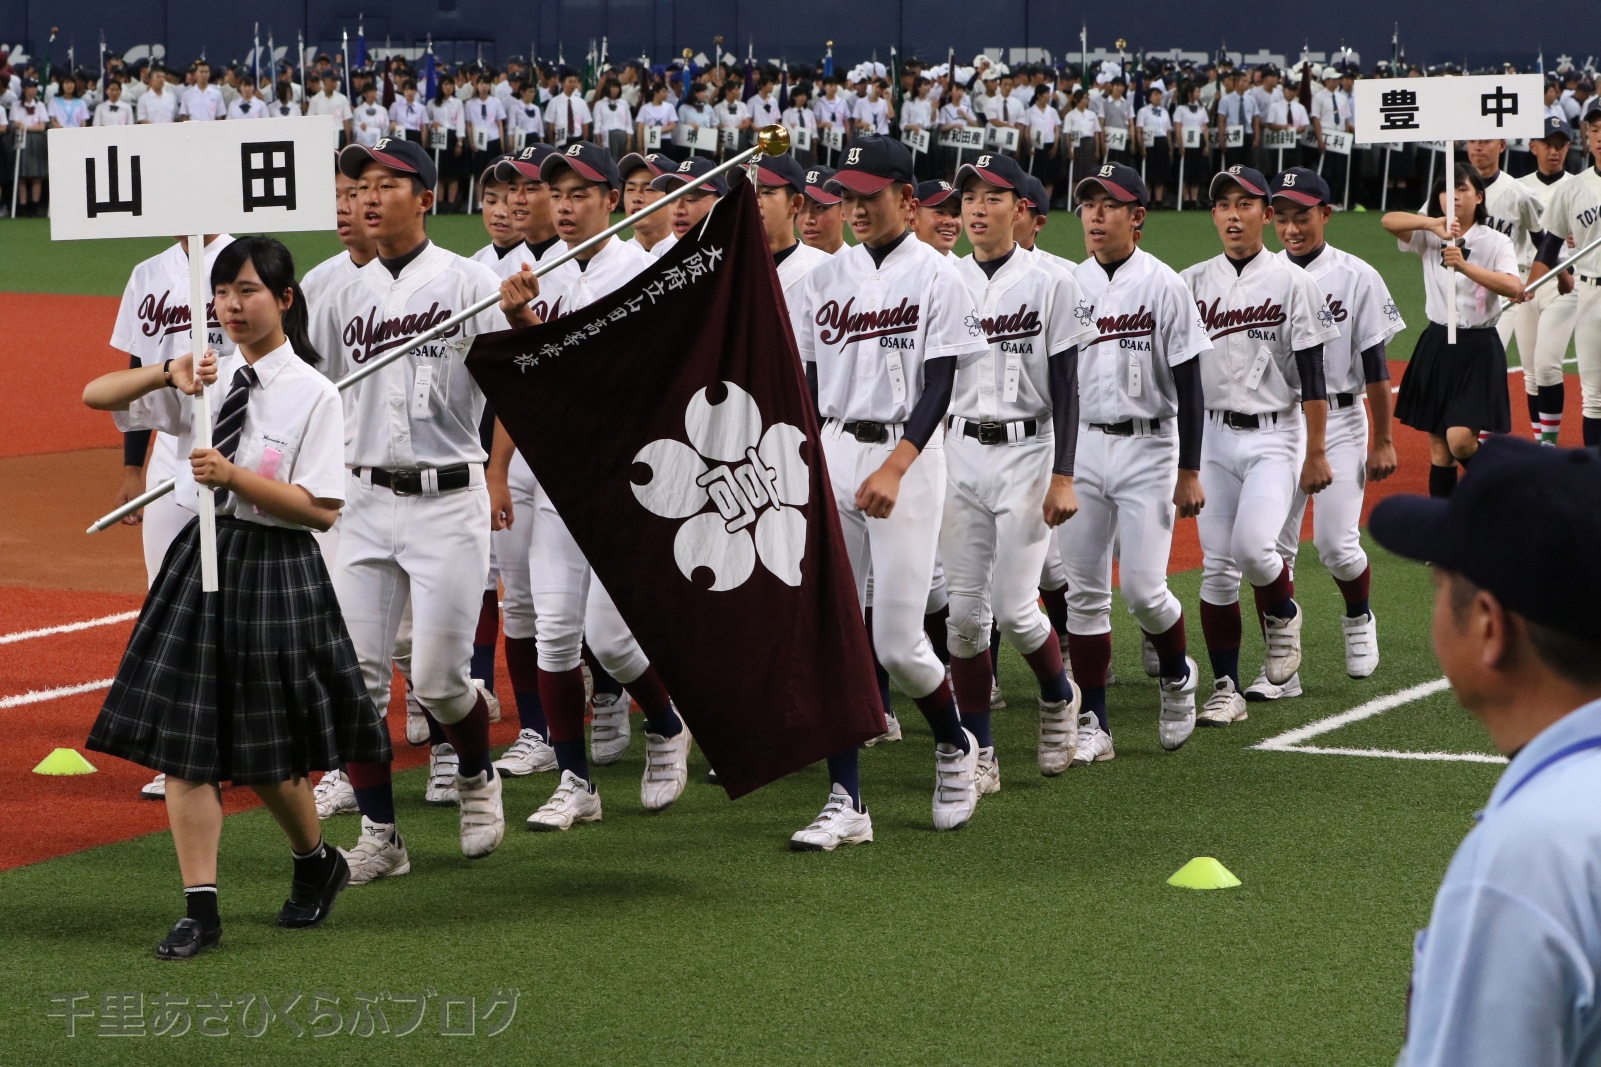 撮影します 開会式 第101回全国高校野球選手権大阪大会 大阪 仮 あさひくらぶ ブログ